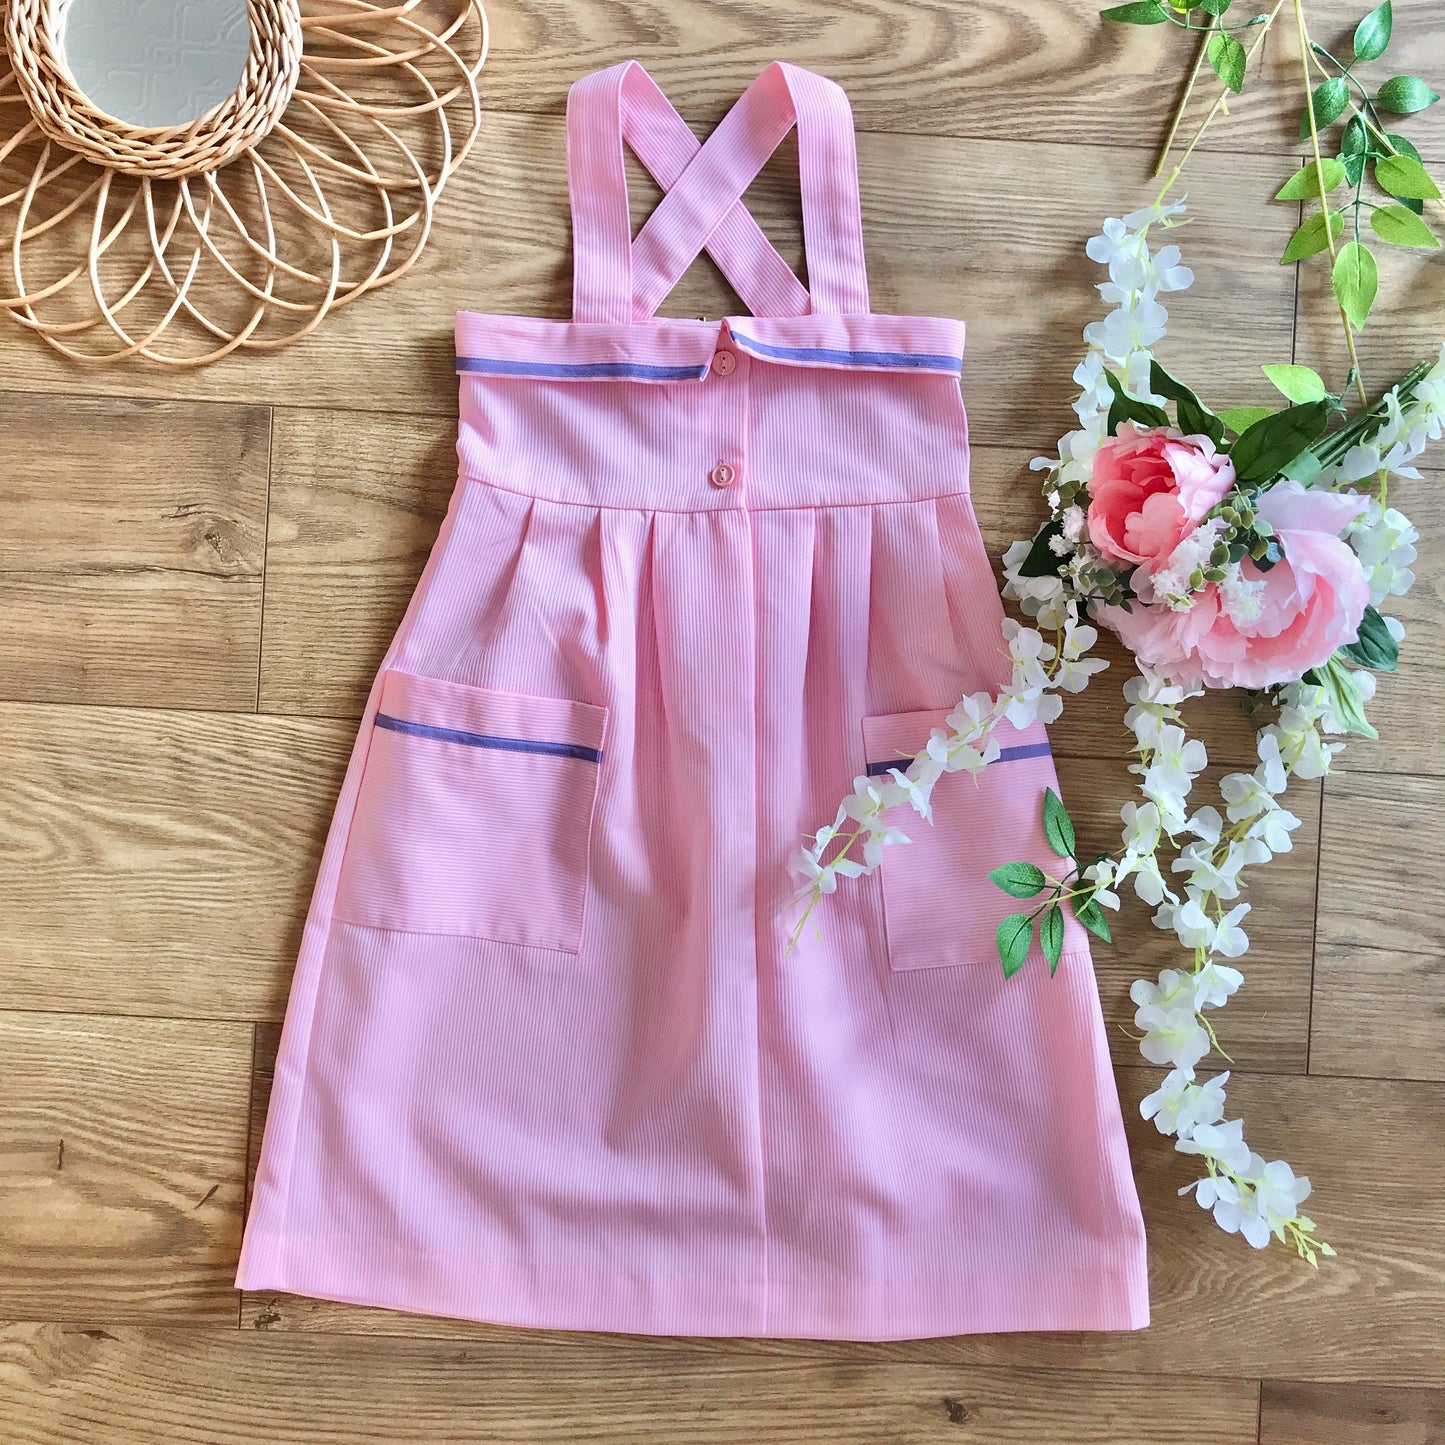 Vintage 1970's Pink Shoulder Strap Summer Dress French Made 10-12Yrs